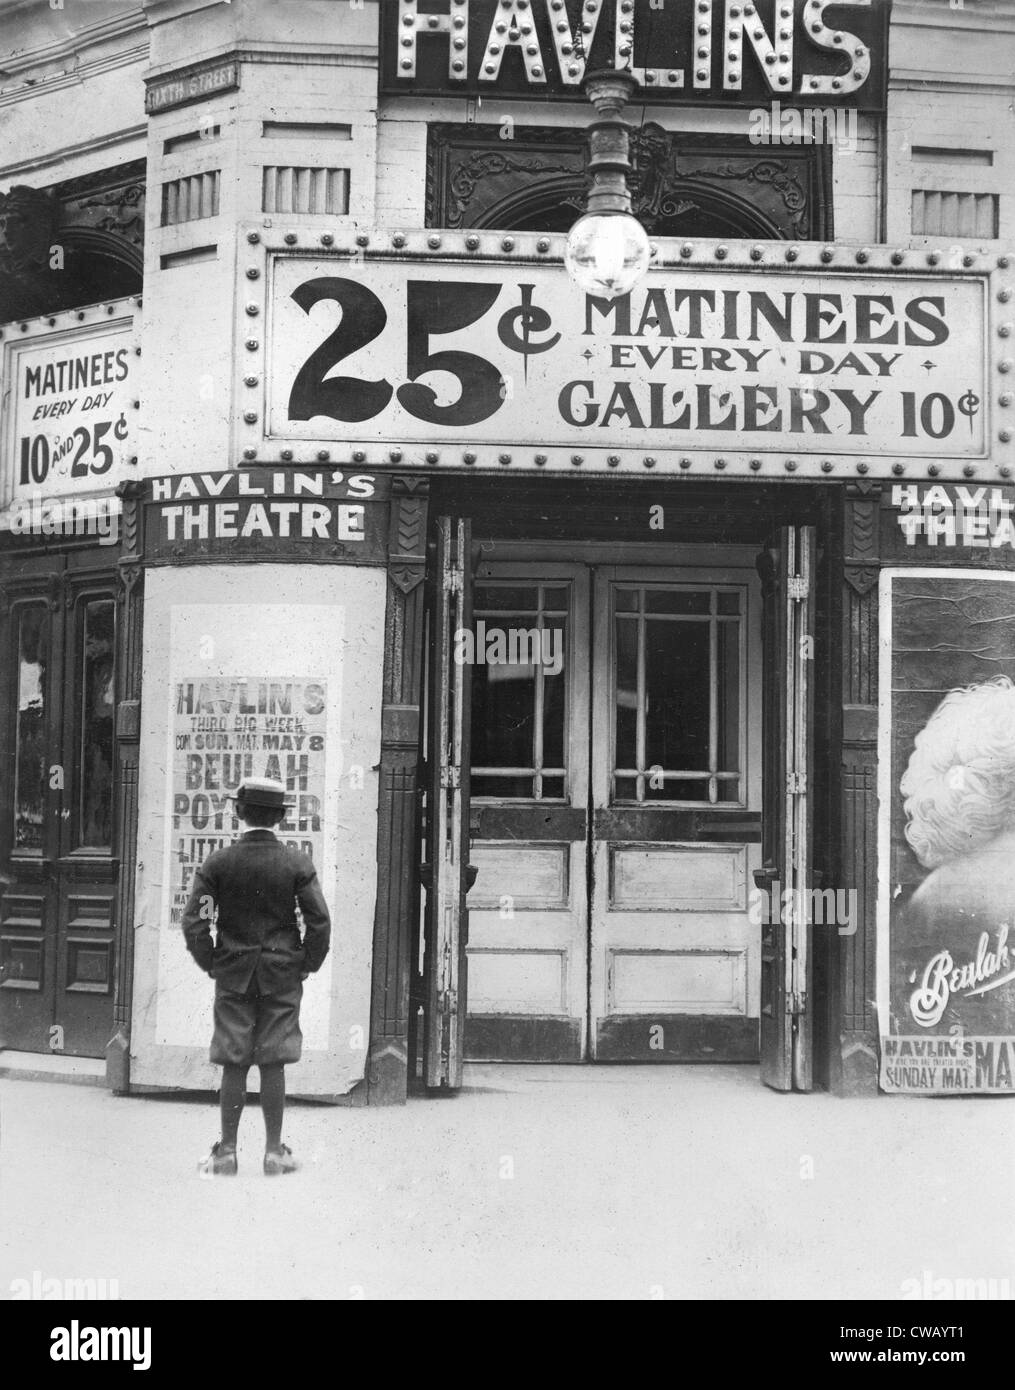 Junge vor einem Filmtheater, die einen Film mit Beulah Poynter, original Beschriftung-Zitat: "Wo die Jungs ihr Geld ausgeben", Stockfoto